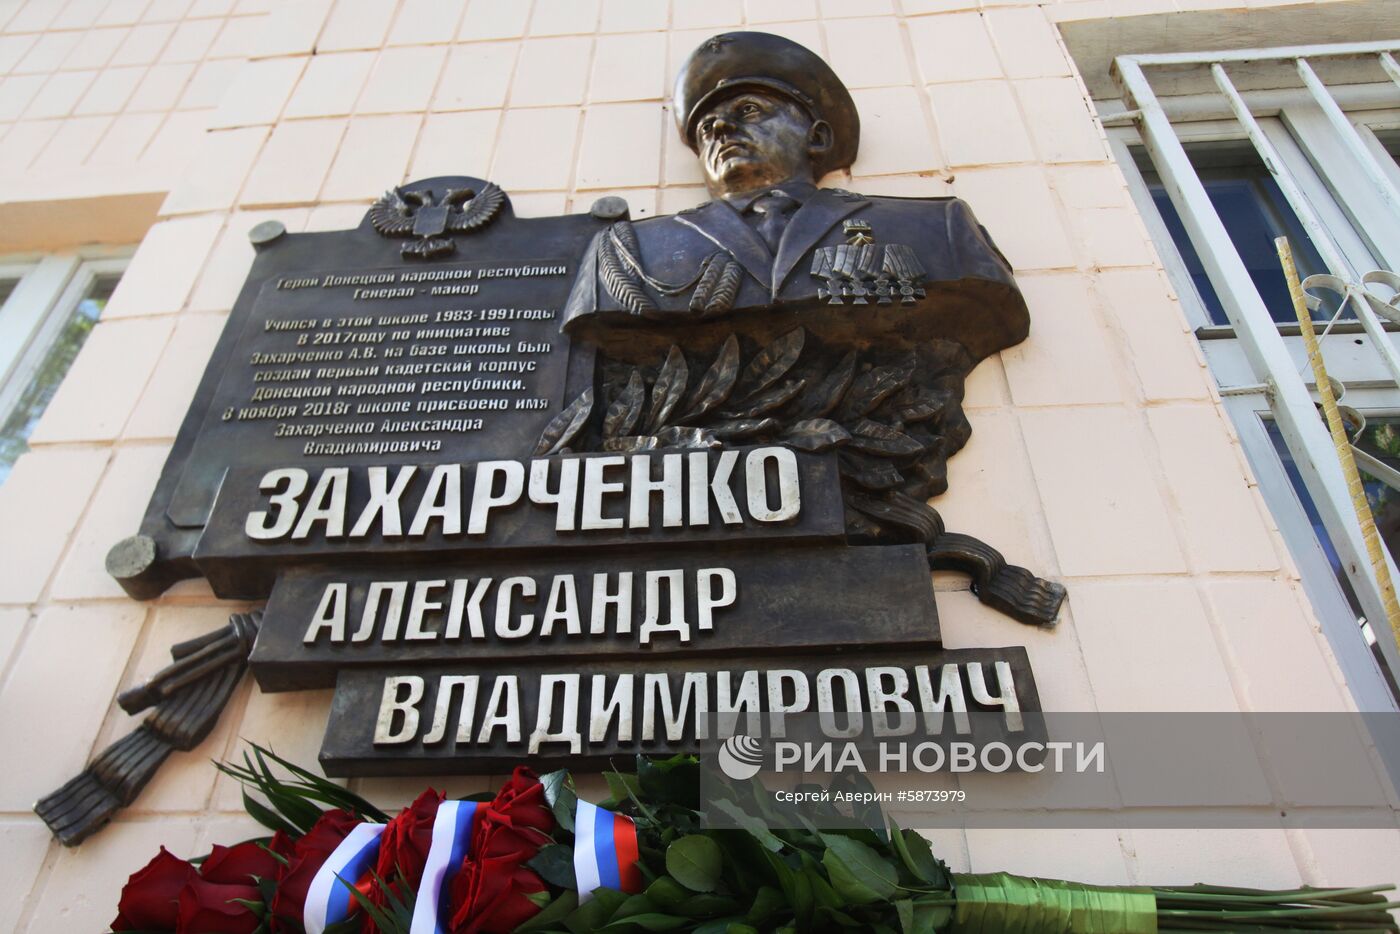 Открытие мемориальной доски А. Захарченко в Донецке